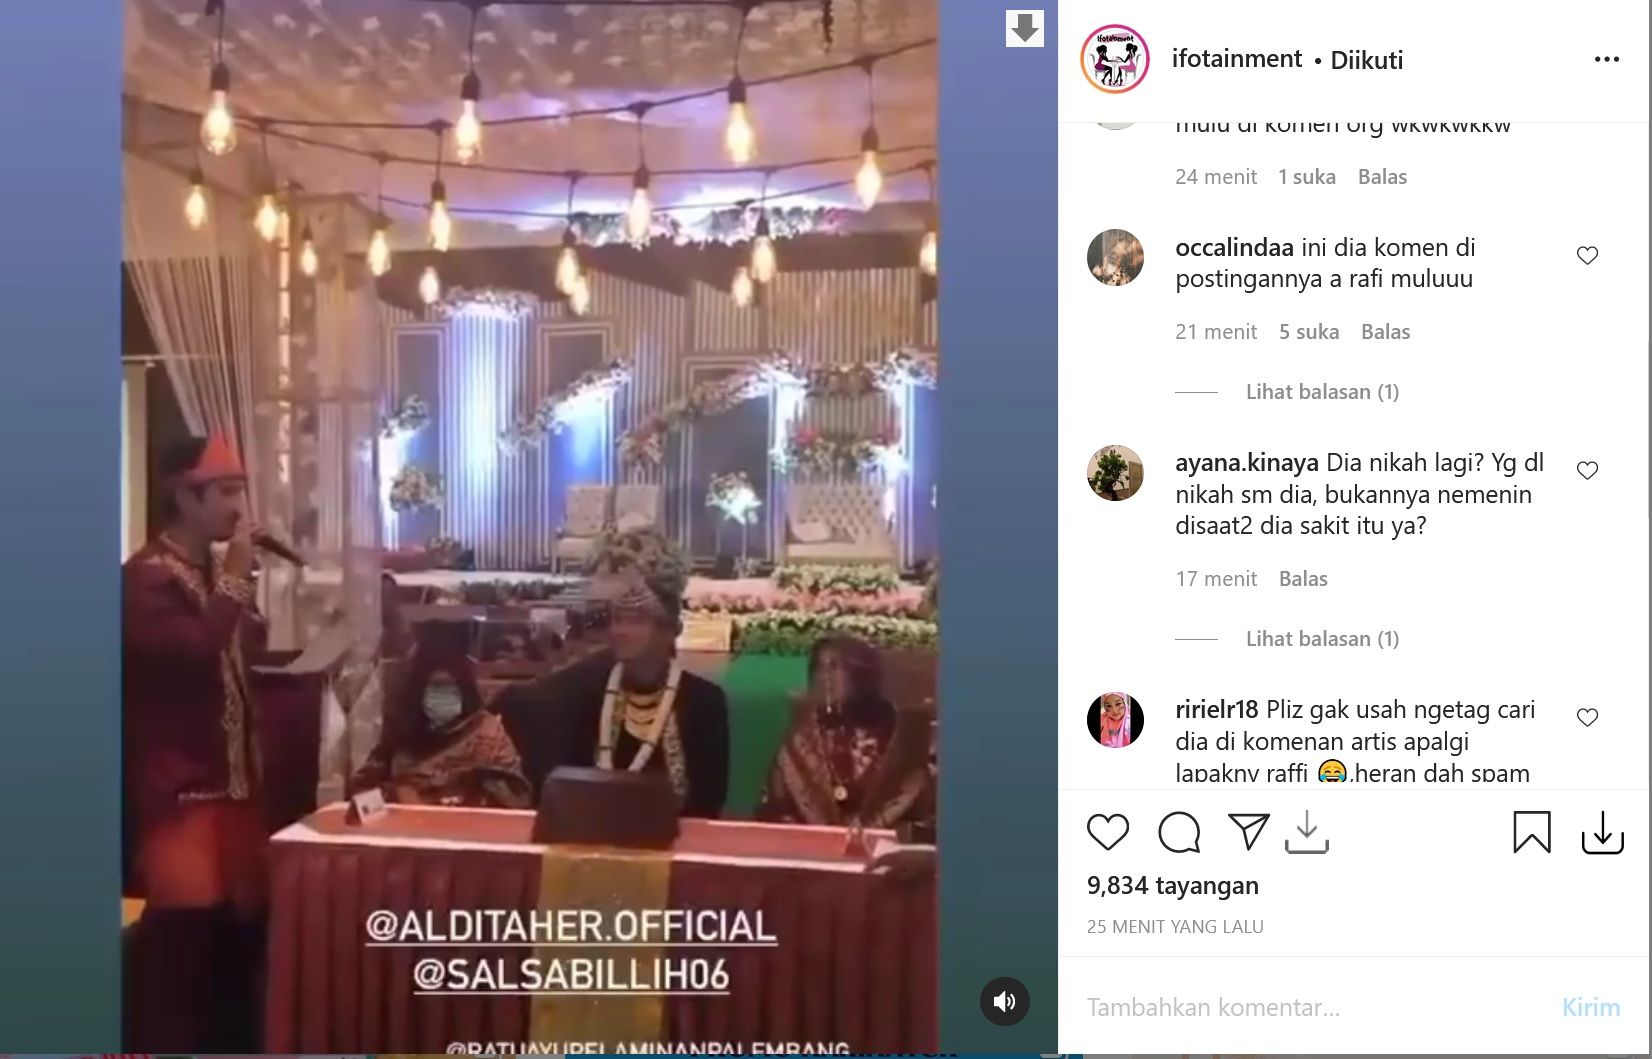 Postingan Aldi Taher menikah dengan Salsabilih yang ramai di akun gosip Instagram